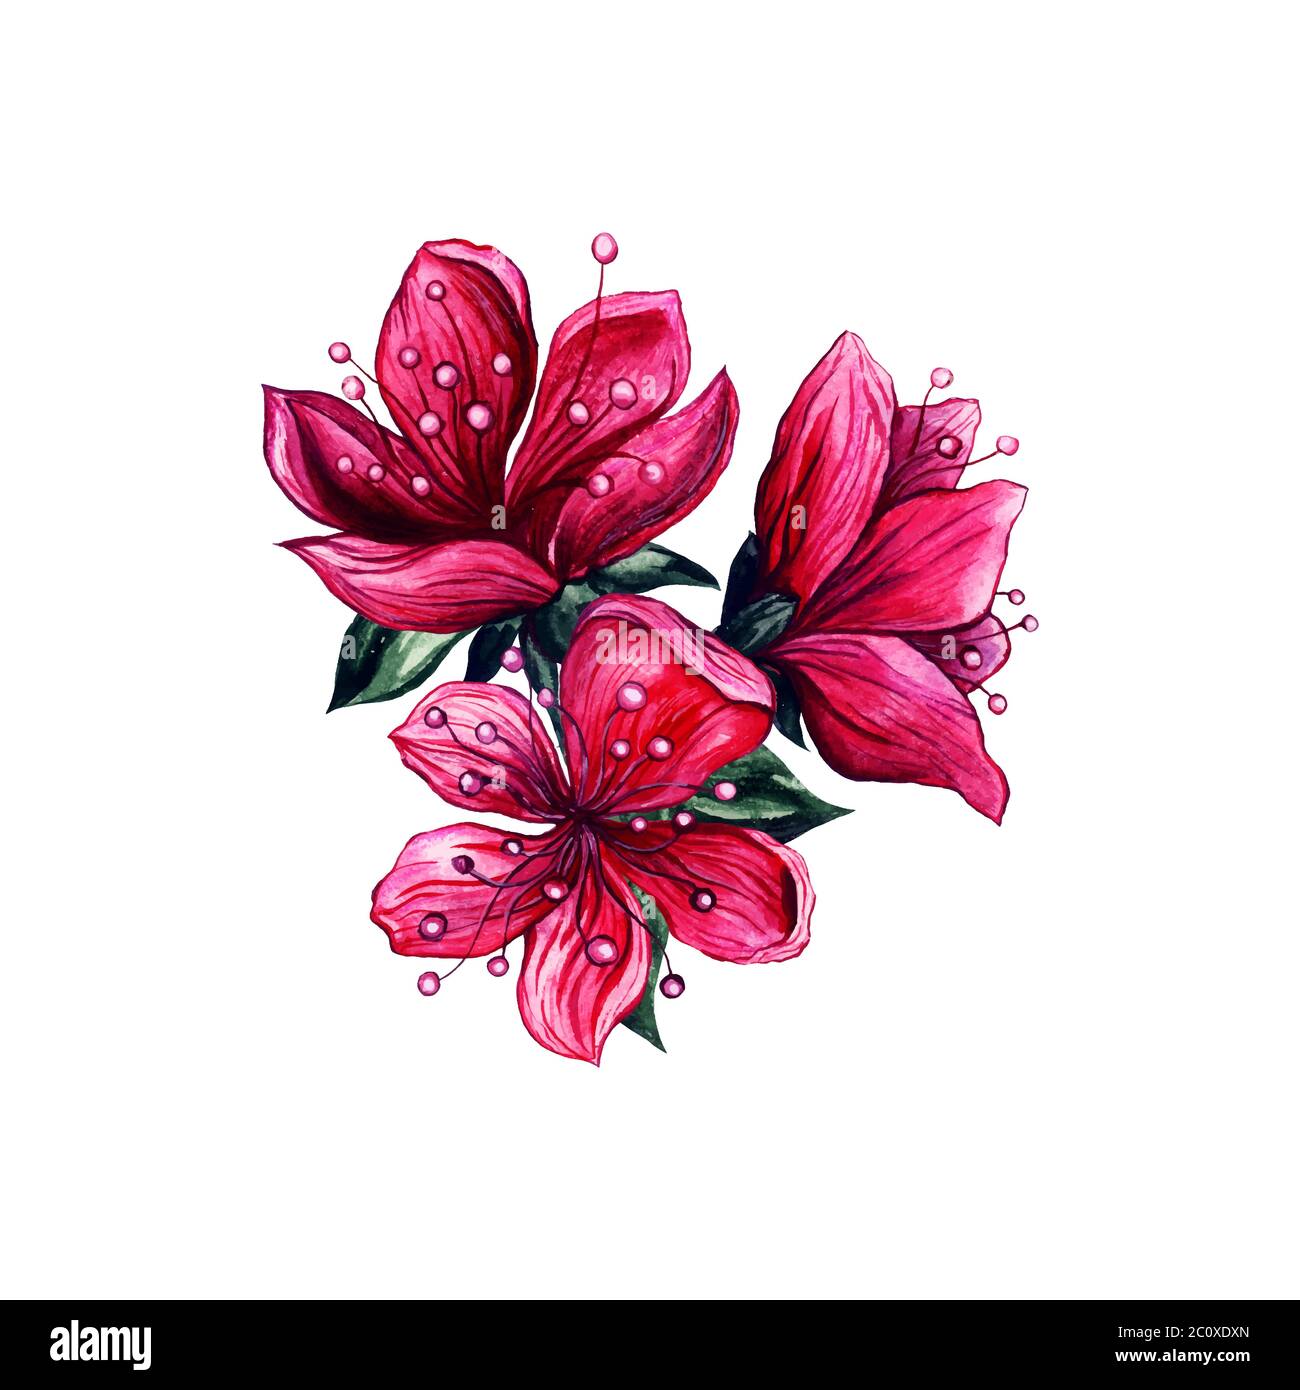 Pflaumenblüten Rosa Blumen, handgezeichnetes Aquarell asiatisches Vintage-Design. Isolierte japanische Pflaumen- oder chinesische Aprikosenblüten mit strukturierten Kronblättern und grünen Blättern, floraler Kunstdekoration Stock Vektor